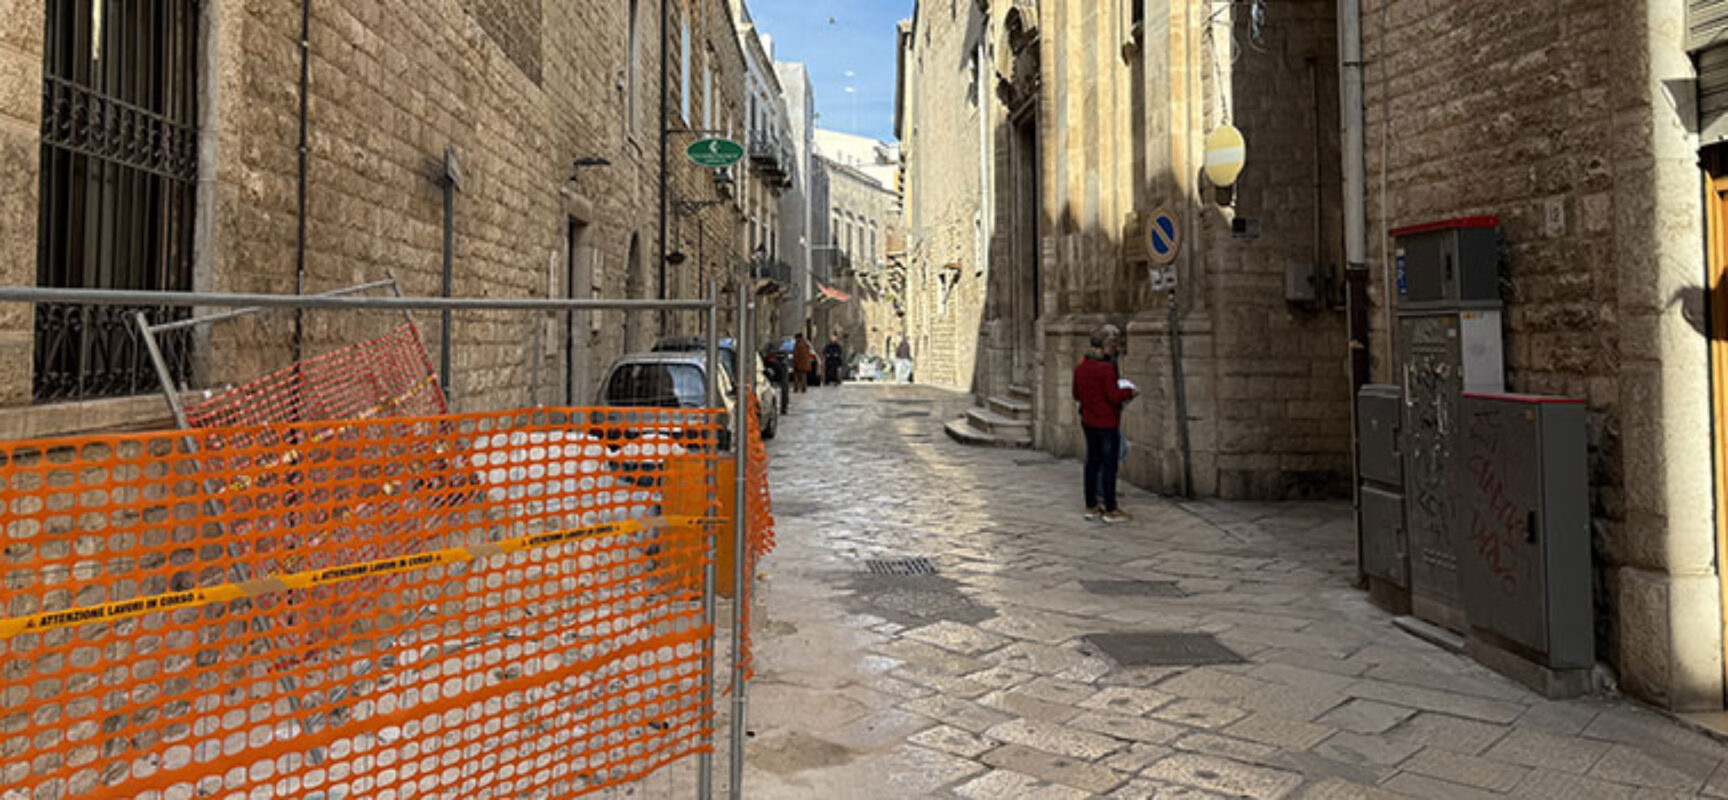 Riprendono lavori a basolato centro storico, è il turno di via Giulio Frisari / DETTAGLI